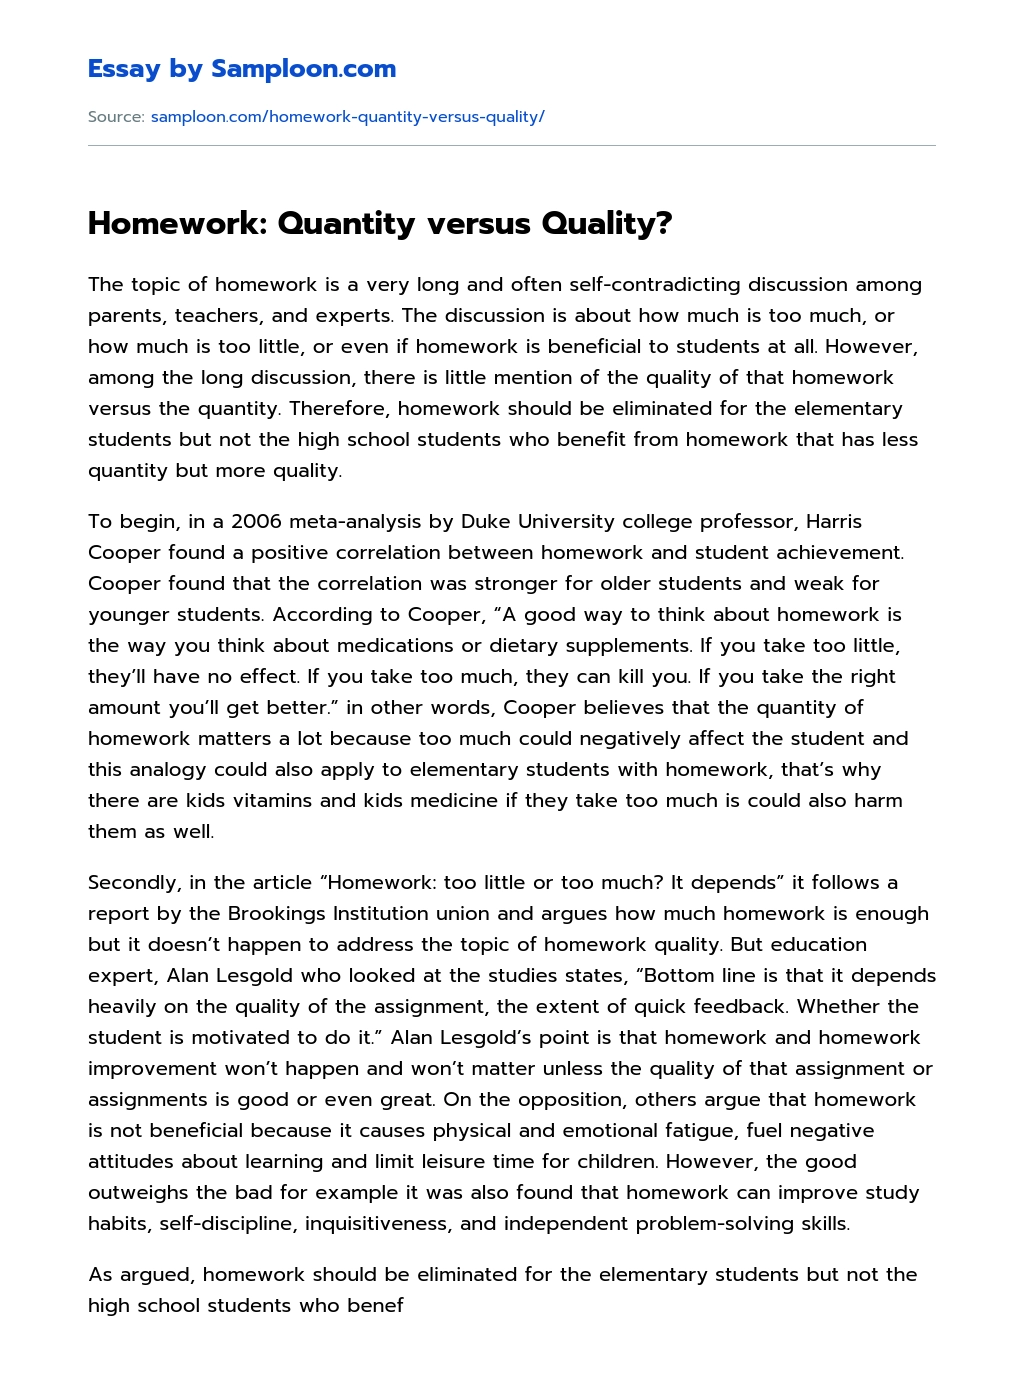 Homework: Quantity versus Quality? essay